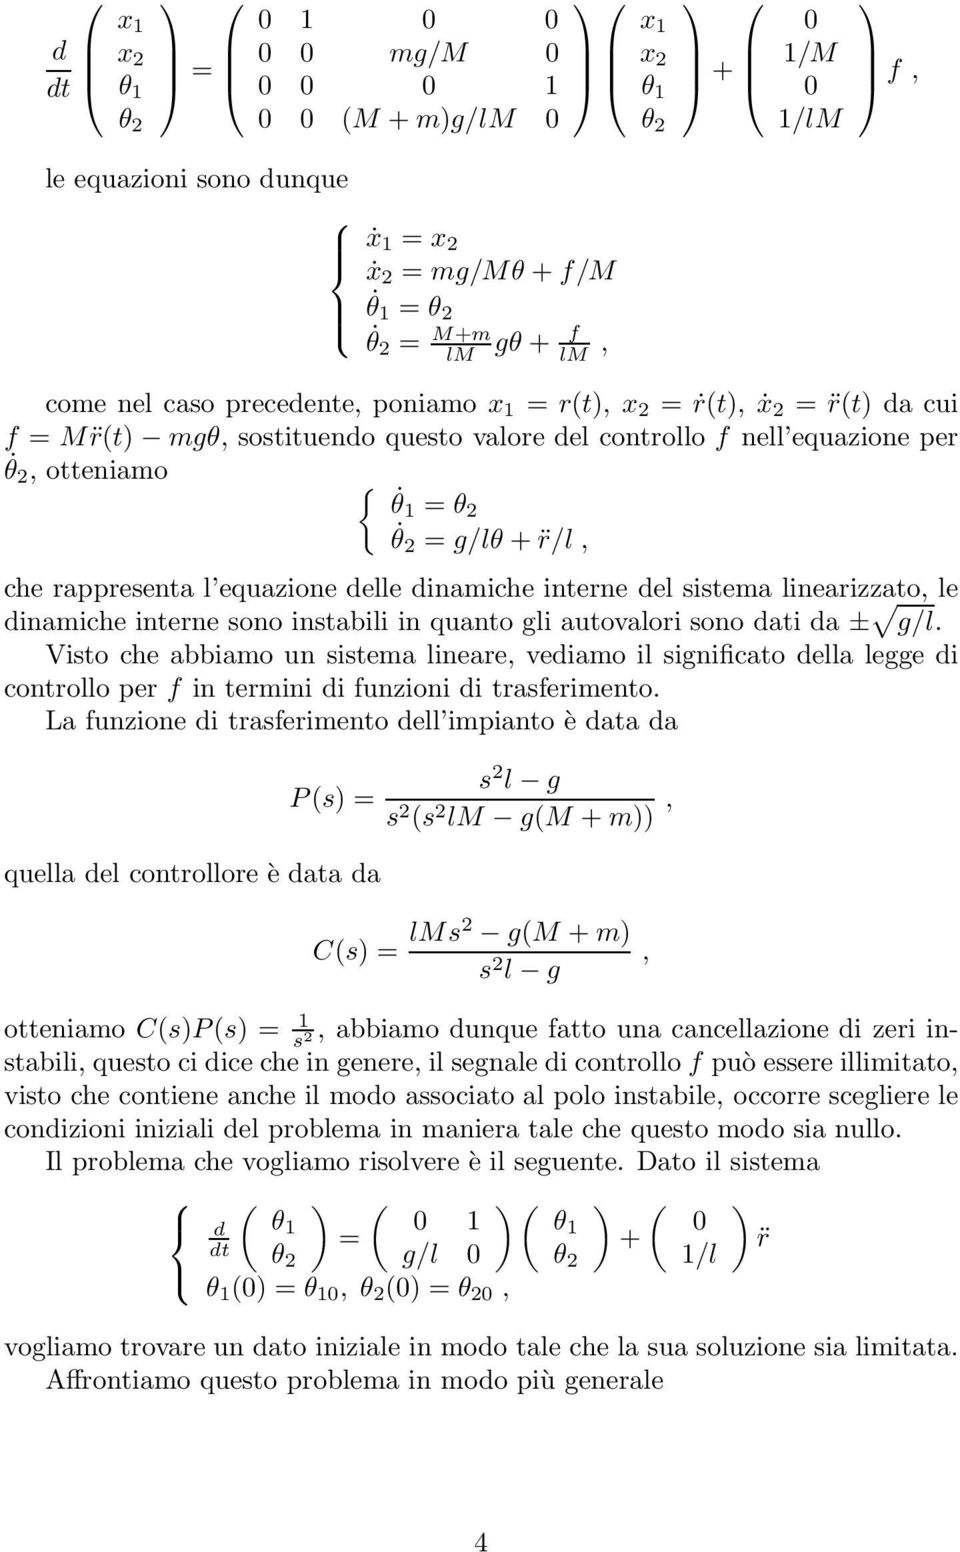 interne del sistema linearizzato, le dinamiche interne sono instabili in quanto gli autovalori sono dati da ± g/l.